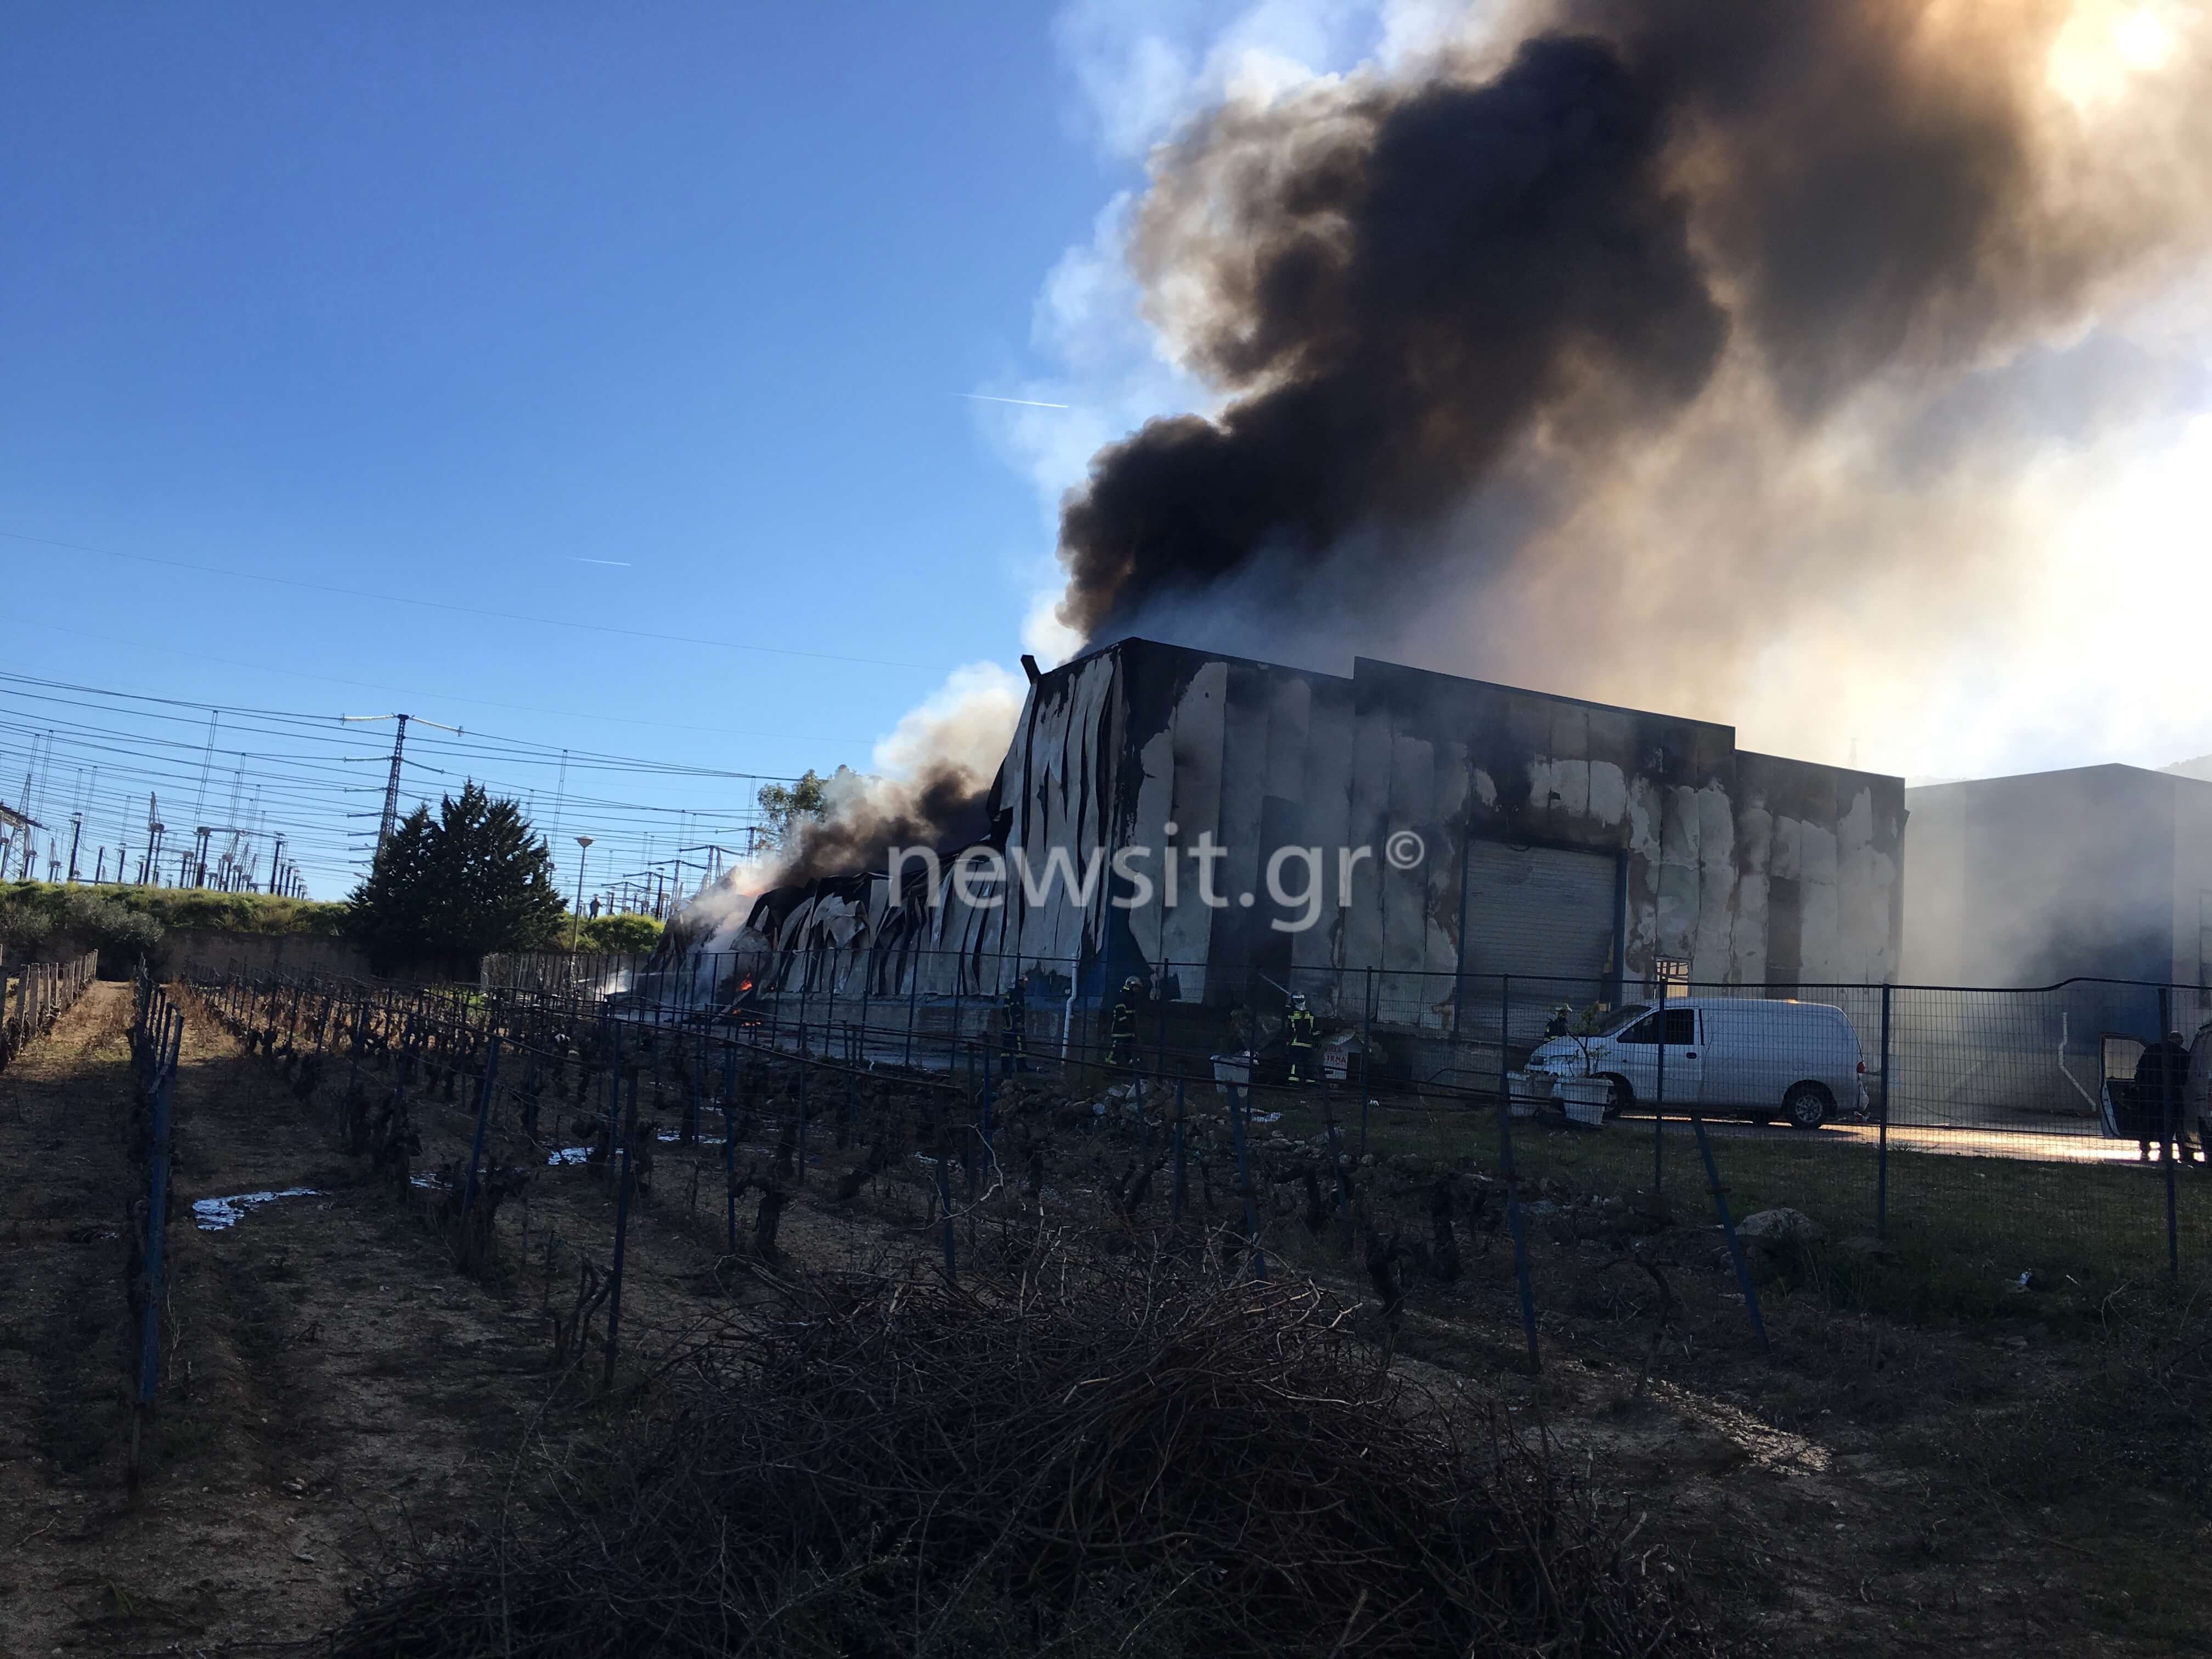 Μεγάλη φωτιά σε εργοστάσιο χαρτικών στα Γλυκά Νερά [pics, video]